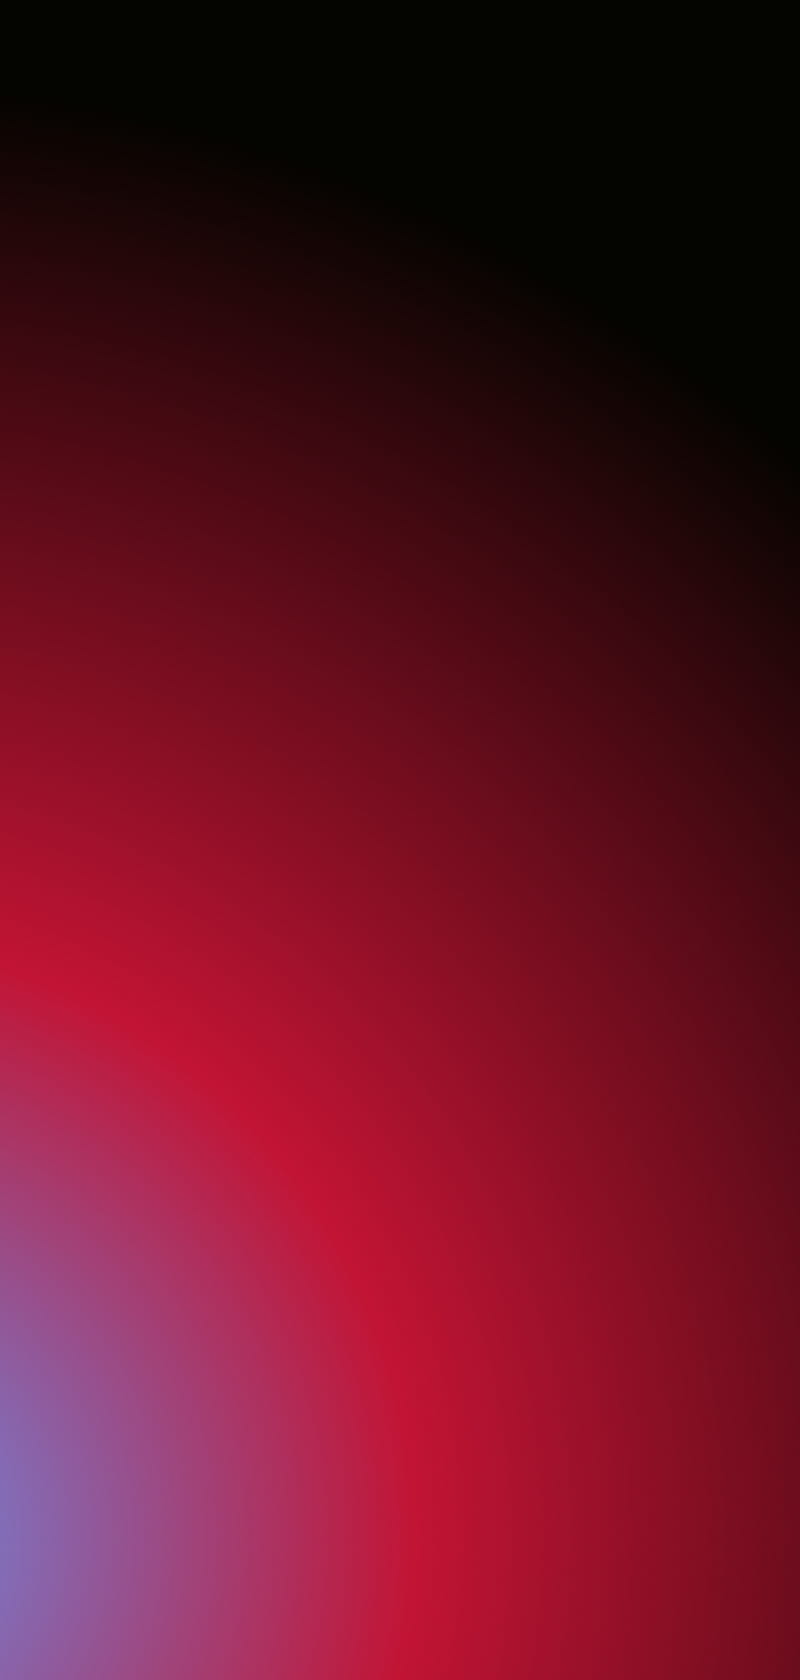 Hình nền iPhone trừu tượng màu đỏ tuyệt đẹp sẽ mang đến phong cách nghệ thuật cho điện thoại của bạn. Khám phá bức ảnh liên quan để tìm kiếm những ý tưởng cảm hứng cho hình nền của bạn!